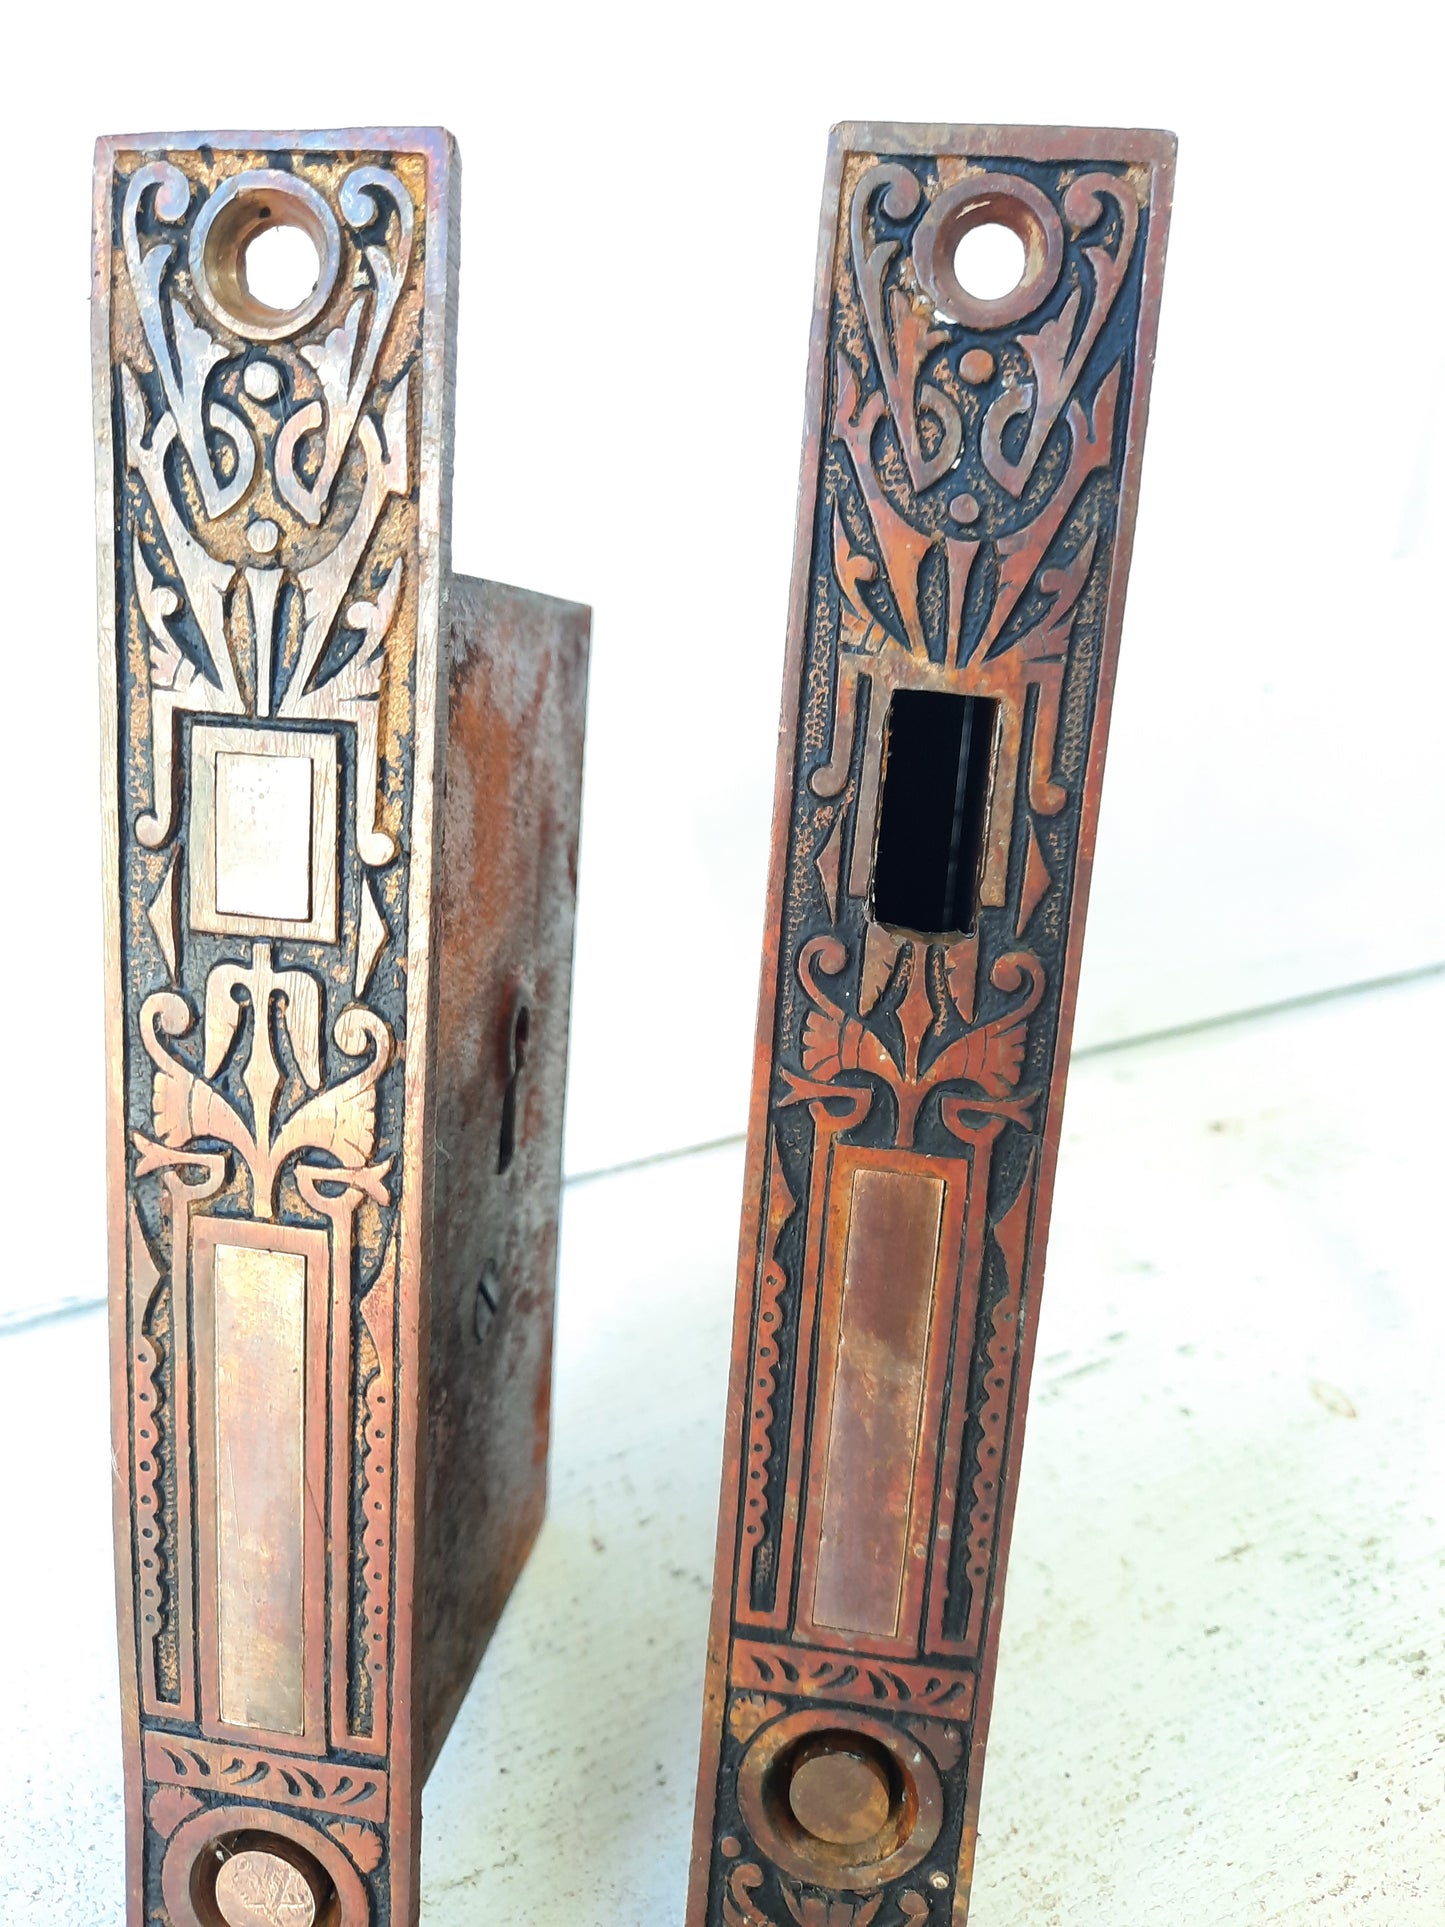 Pair of Ornate Antique Pocket Door Mortise Lock, Double Rolling Door Lock Working Condition